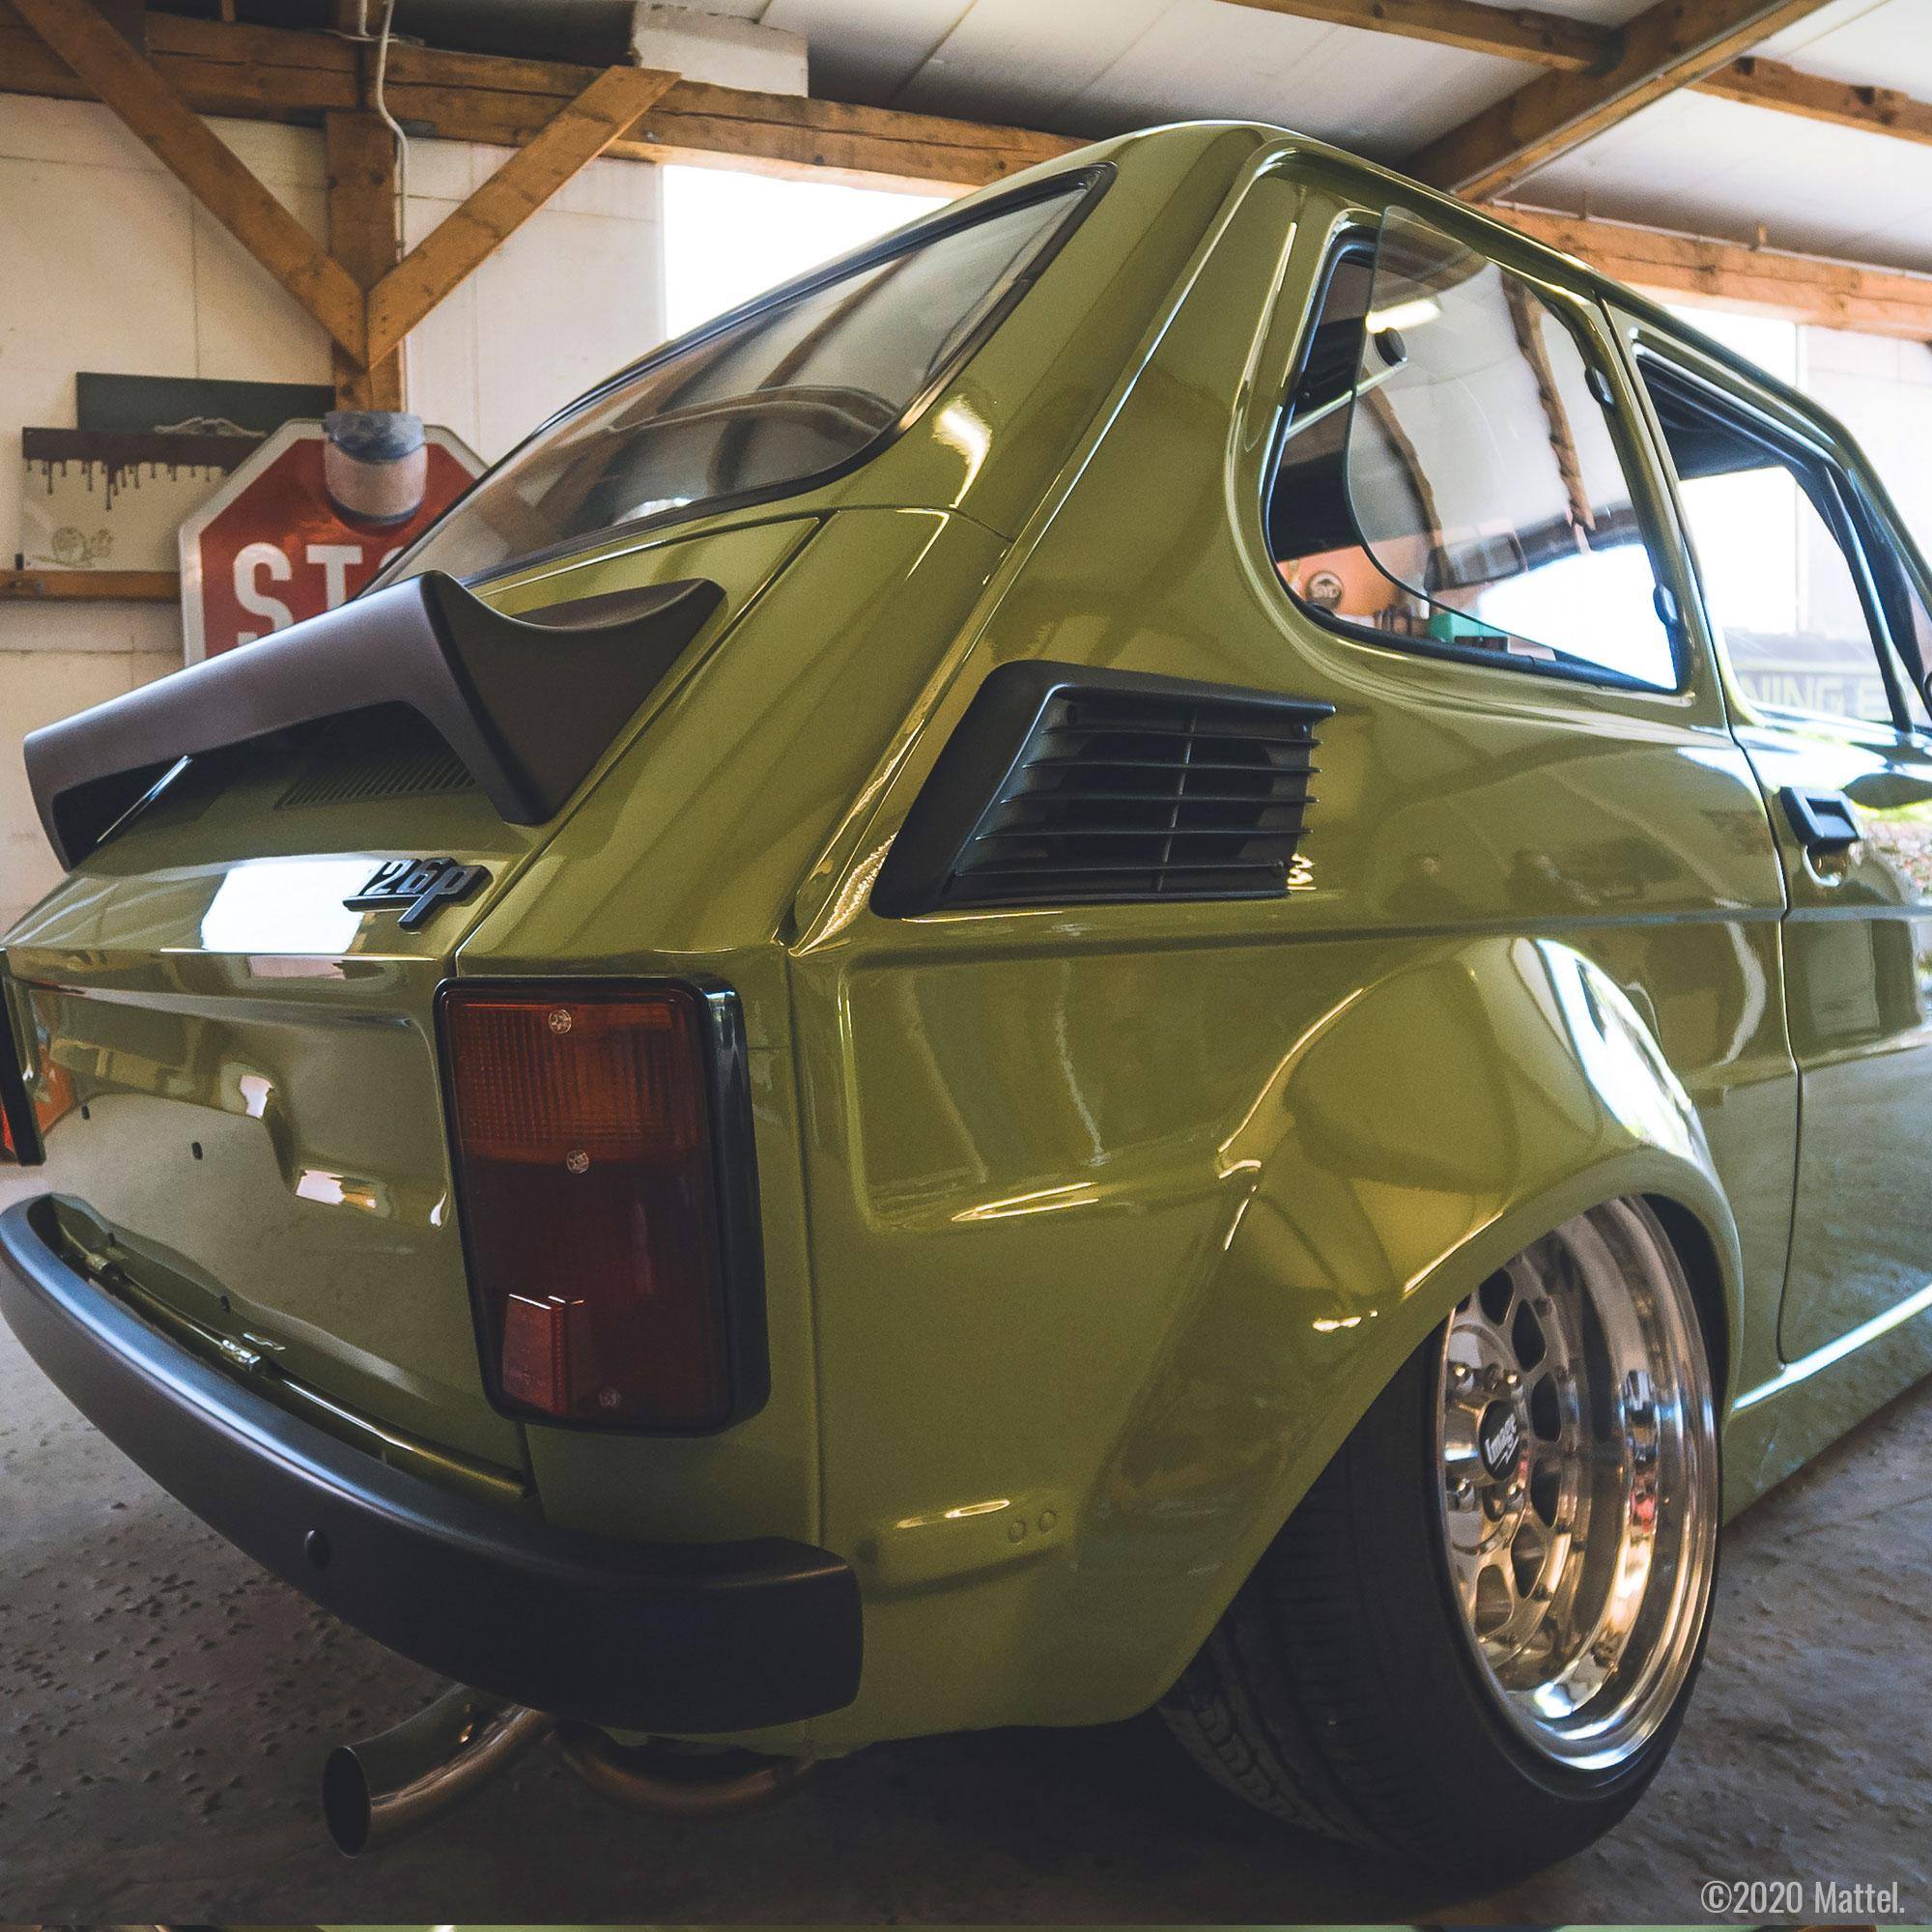 Fiat 126p jako resorak Hot Wheels to bliskie